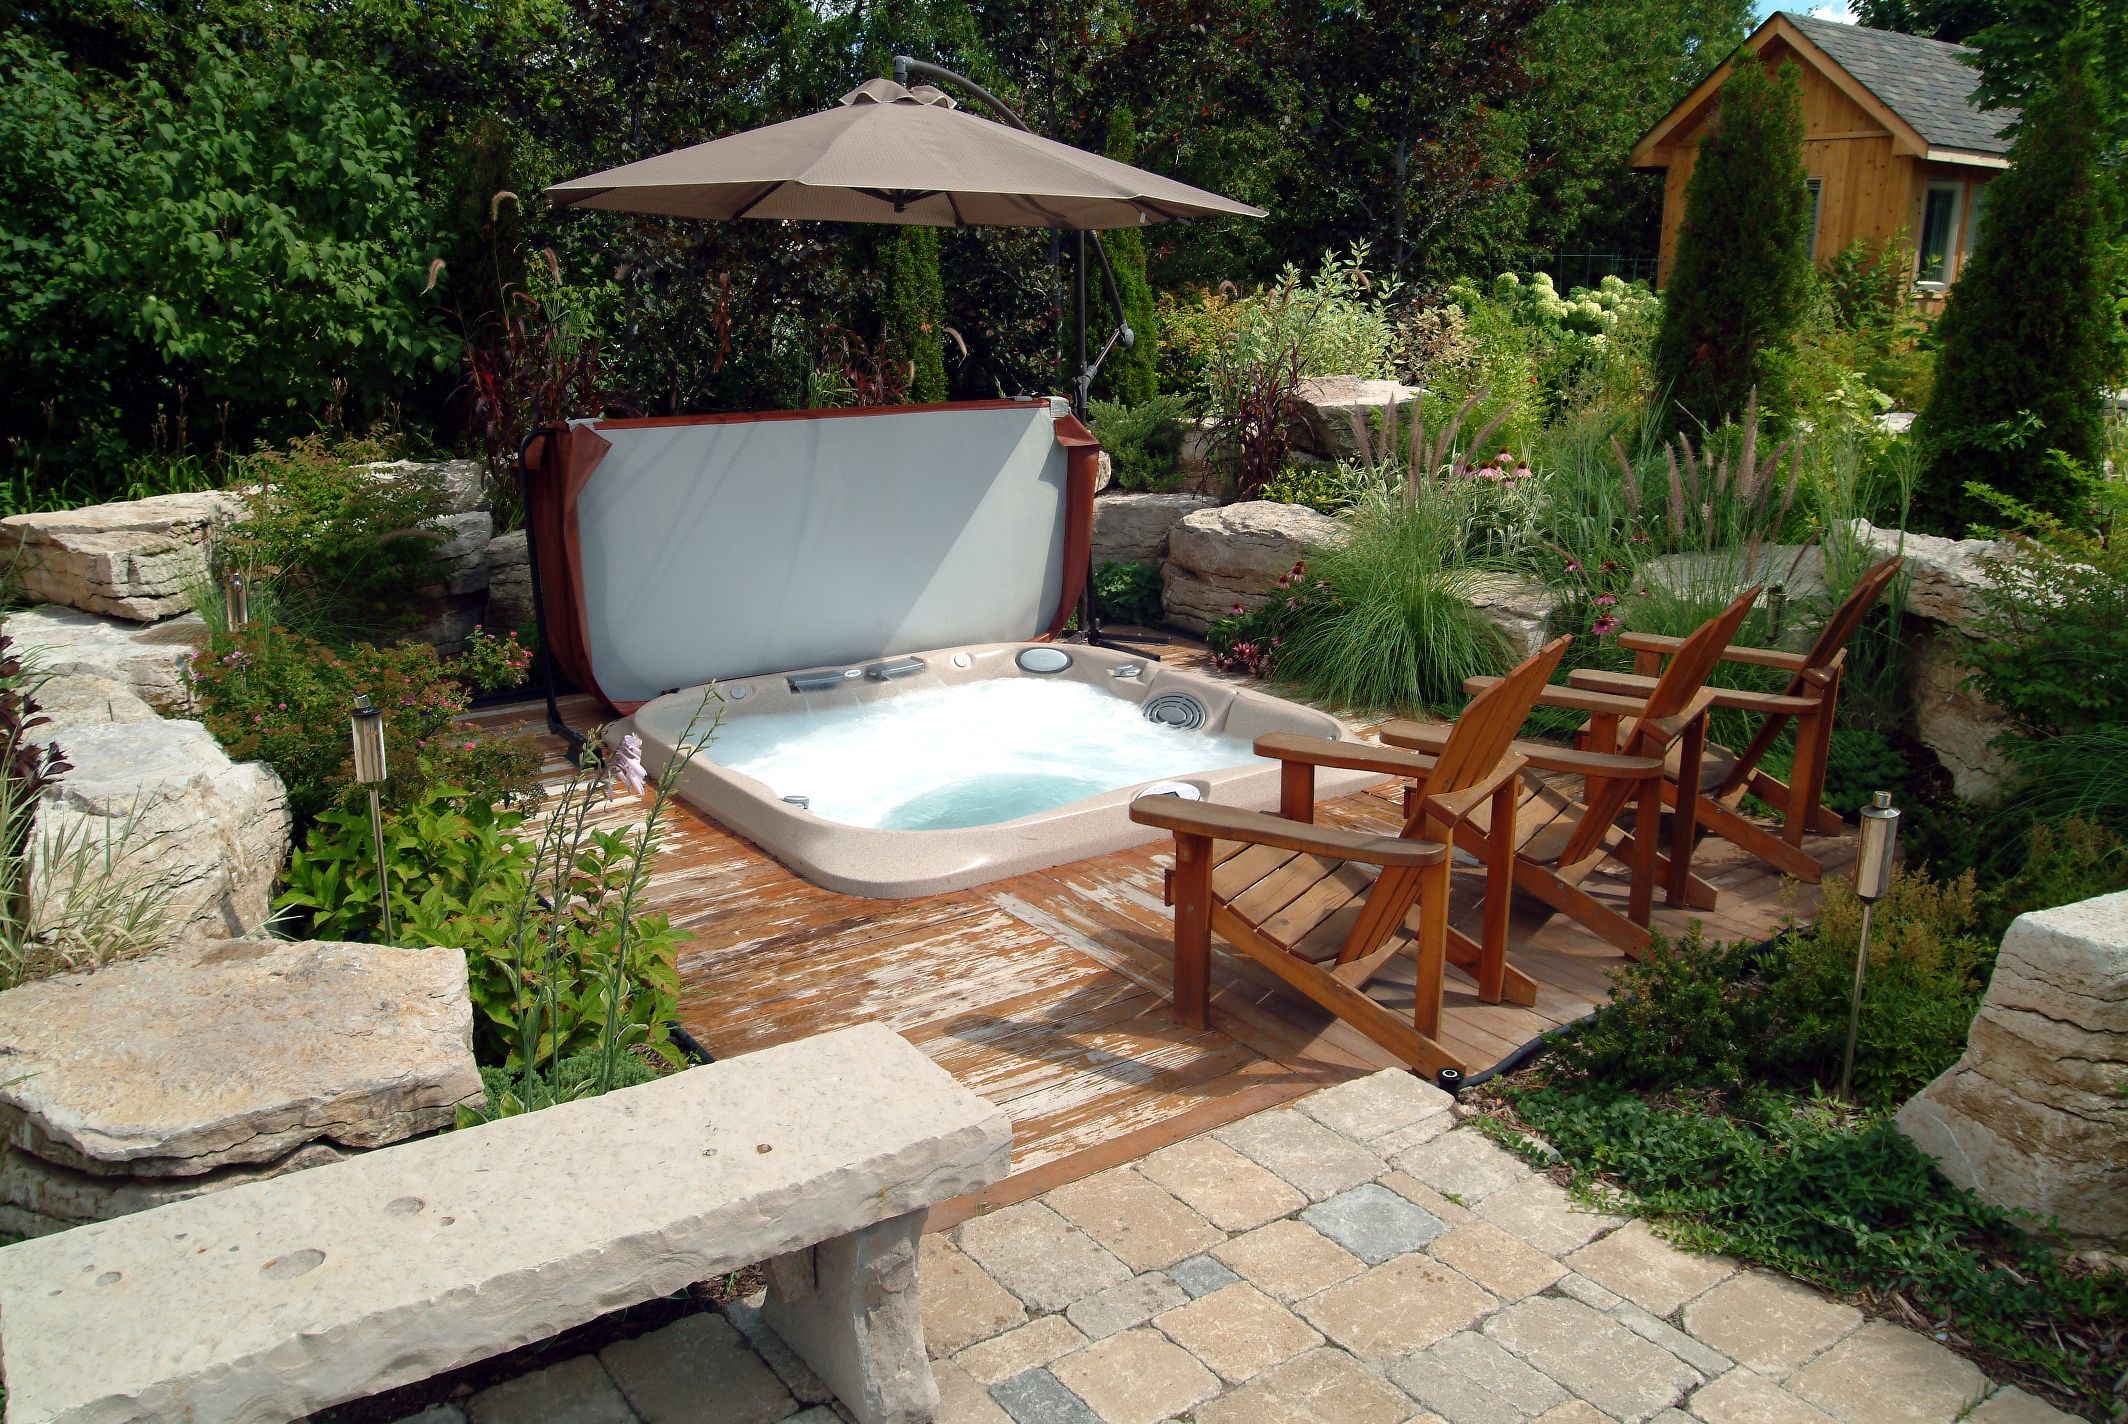 Comment aménager un spa extérieur dans son jardin?